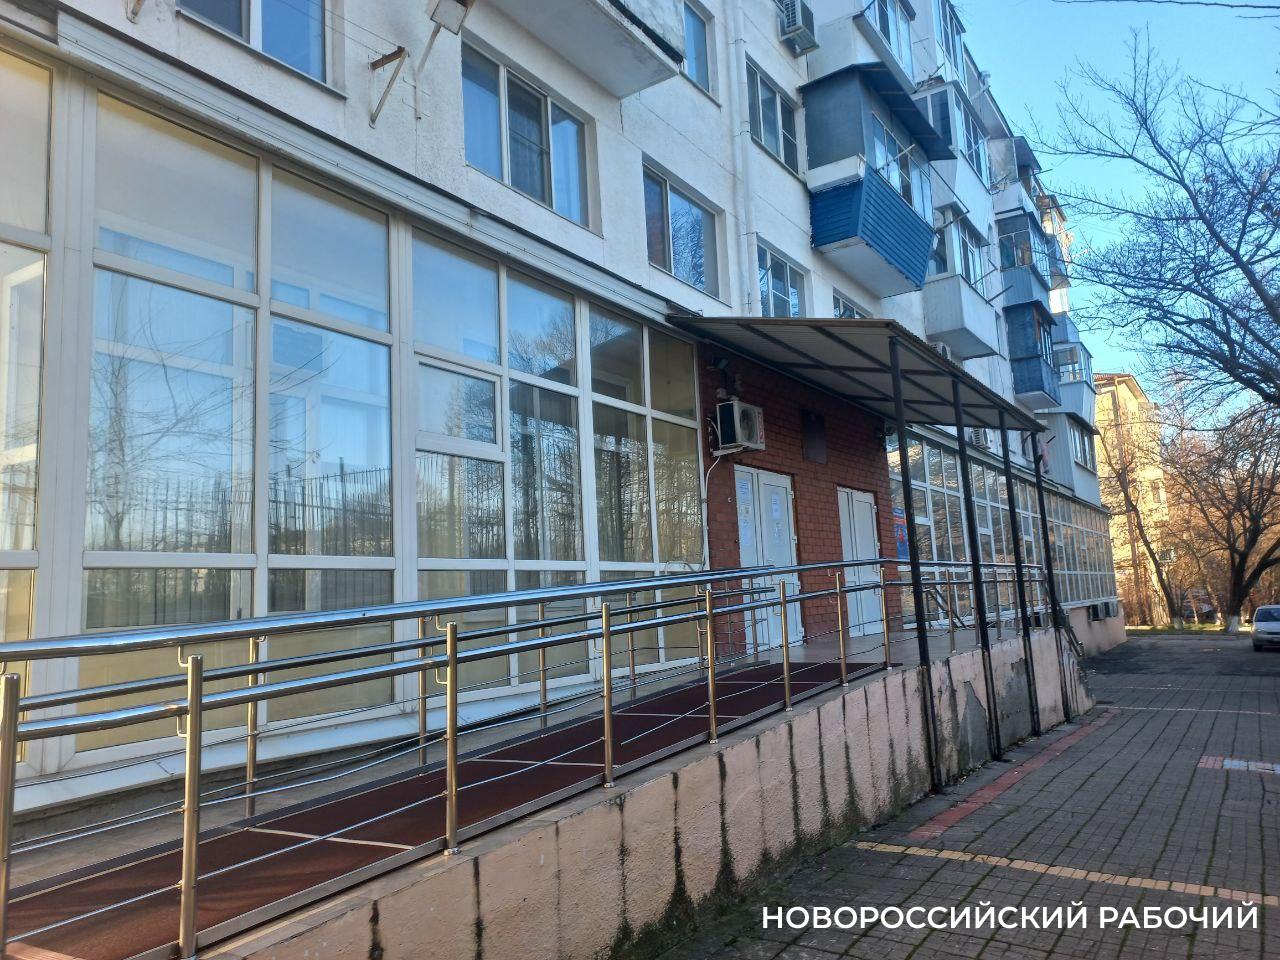 Легендарные места Новороссийска, которых уже нет: «Торгсин»